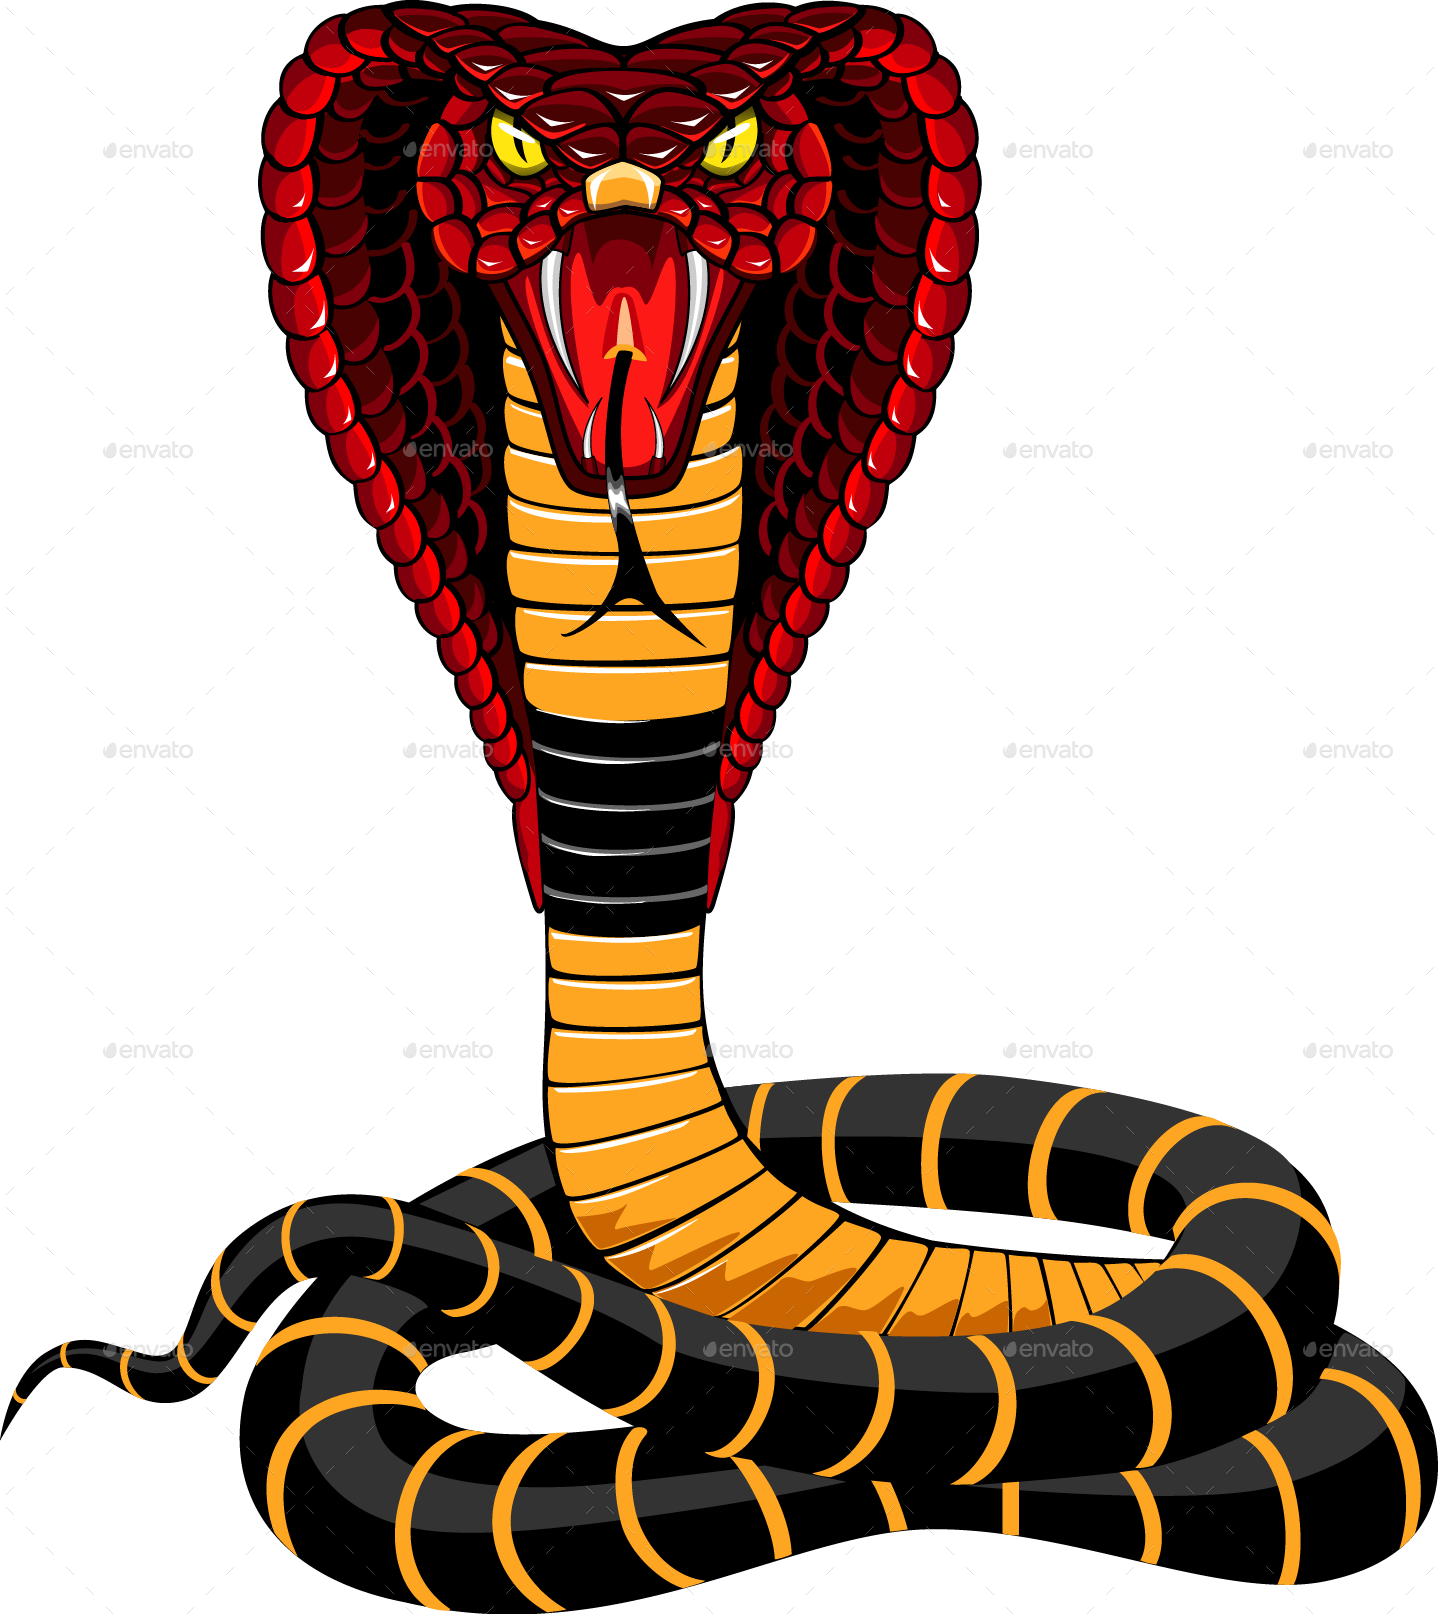 Cobra PNG Image